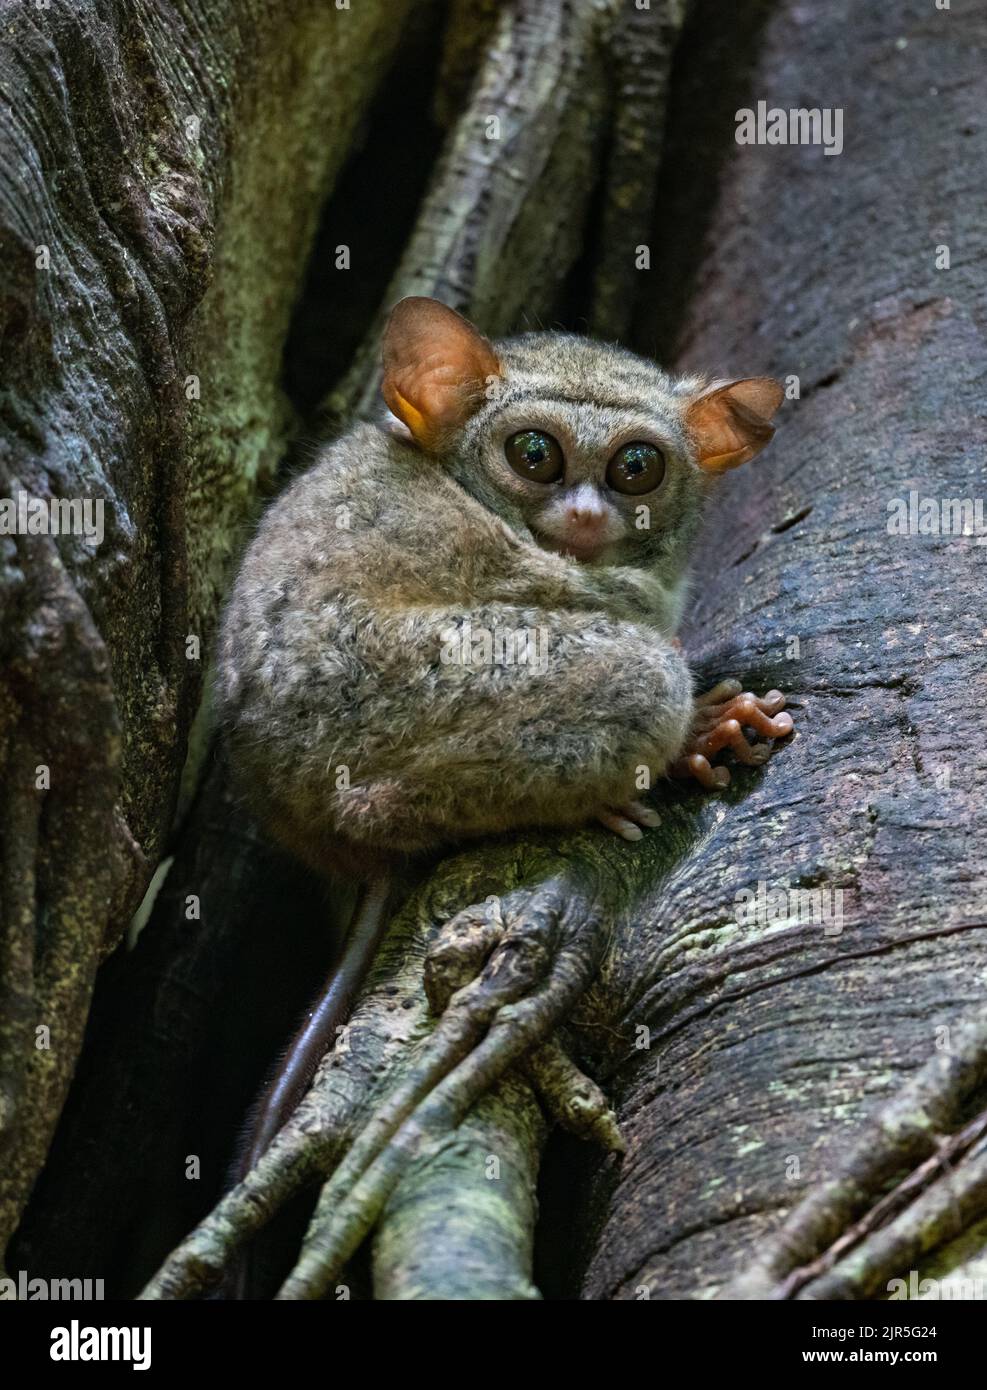 Ein kleiner Primat Spectral Tarsier (Tarsius-Spektrum), der in freier Wildbahn auf einem Baumstamm sitzt. Tangkoko-Nationalpark, Sulawesi, Indonesien. Stockfoto